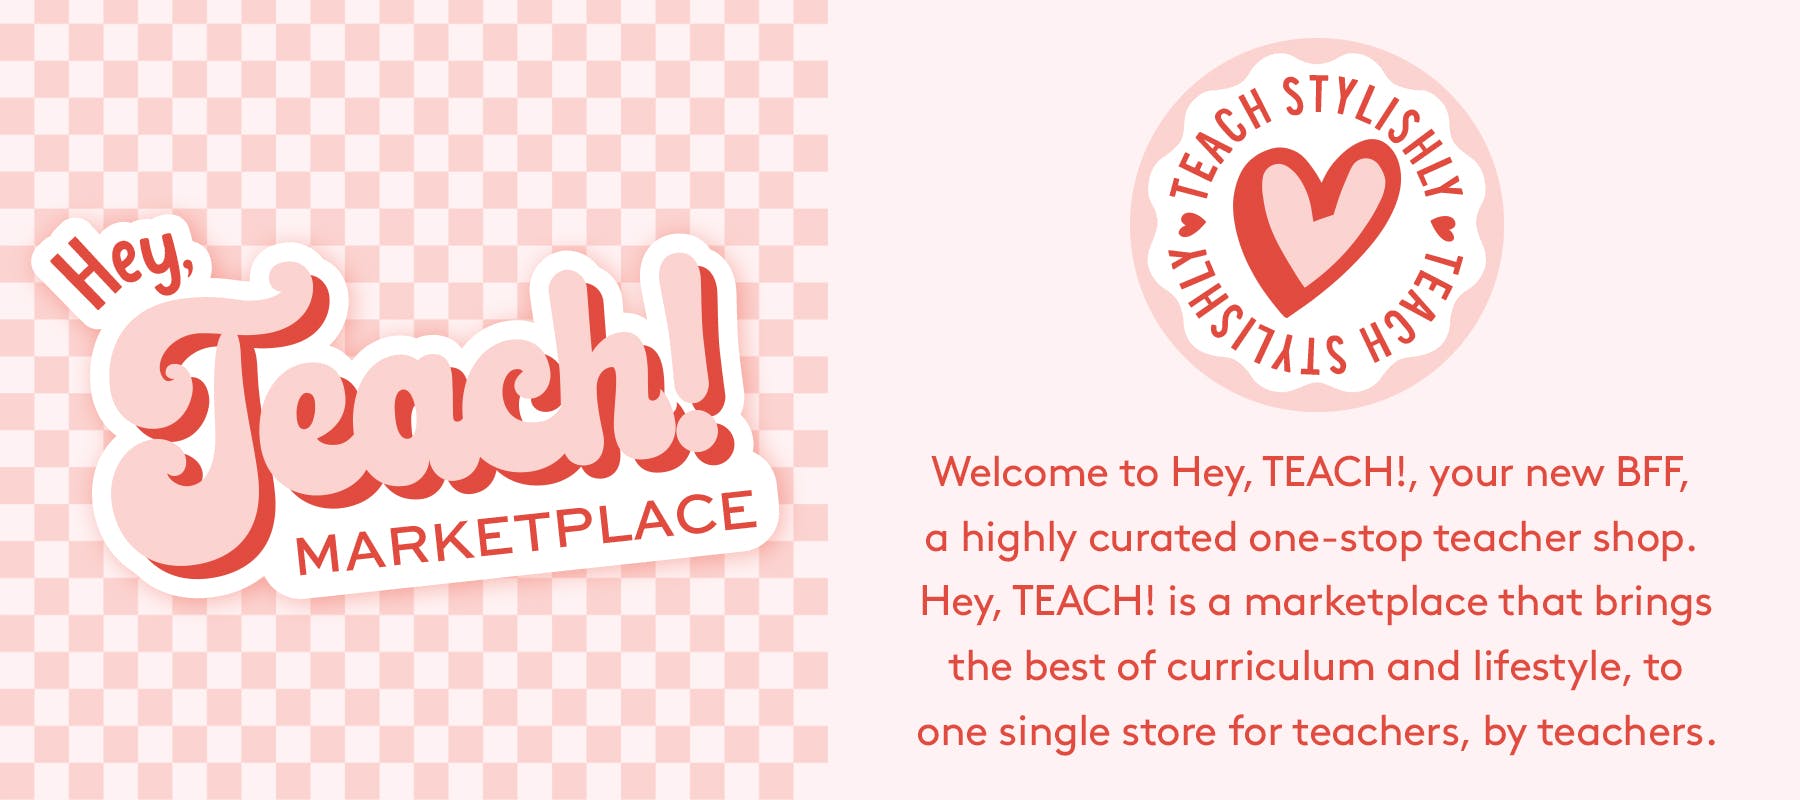 Hey, Teach! Marketplace